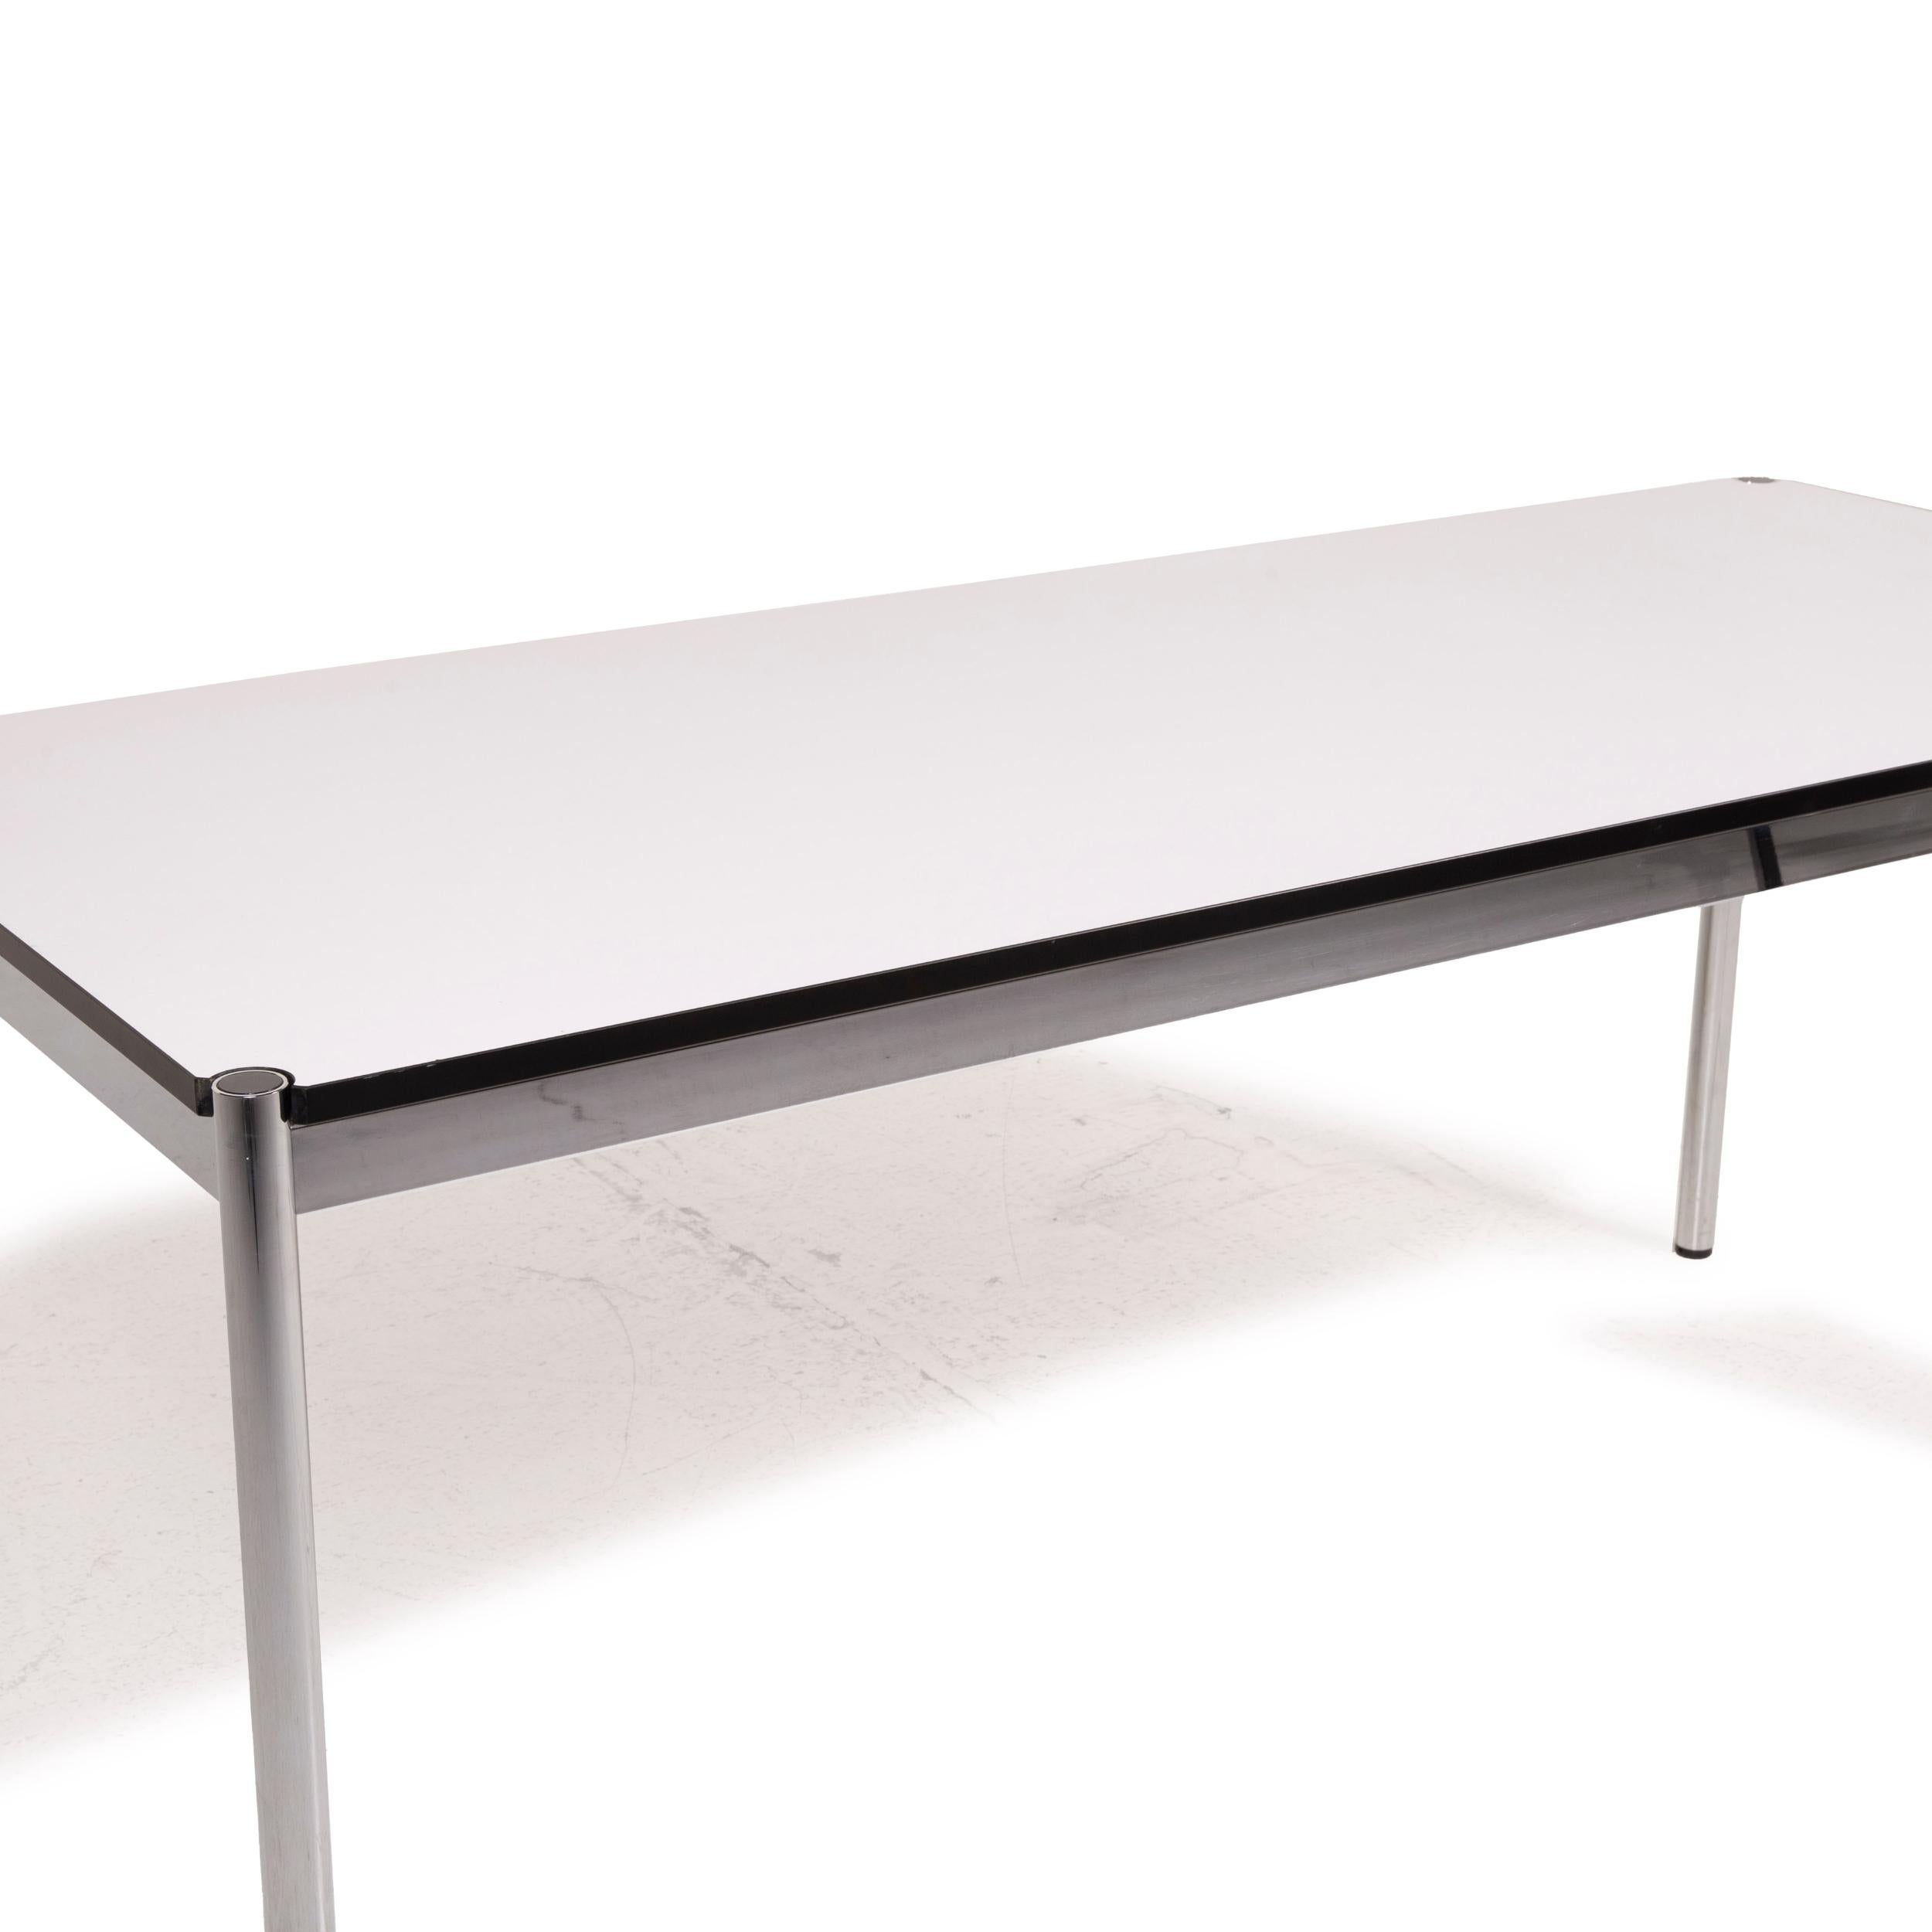 German USM Haller Metal Table White Desk Chrome For Sale